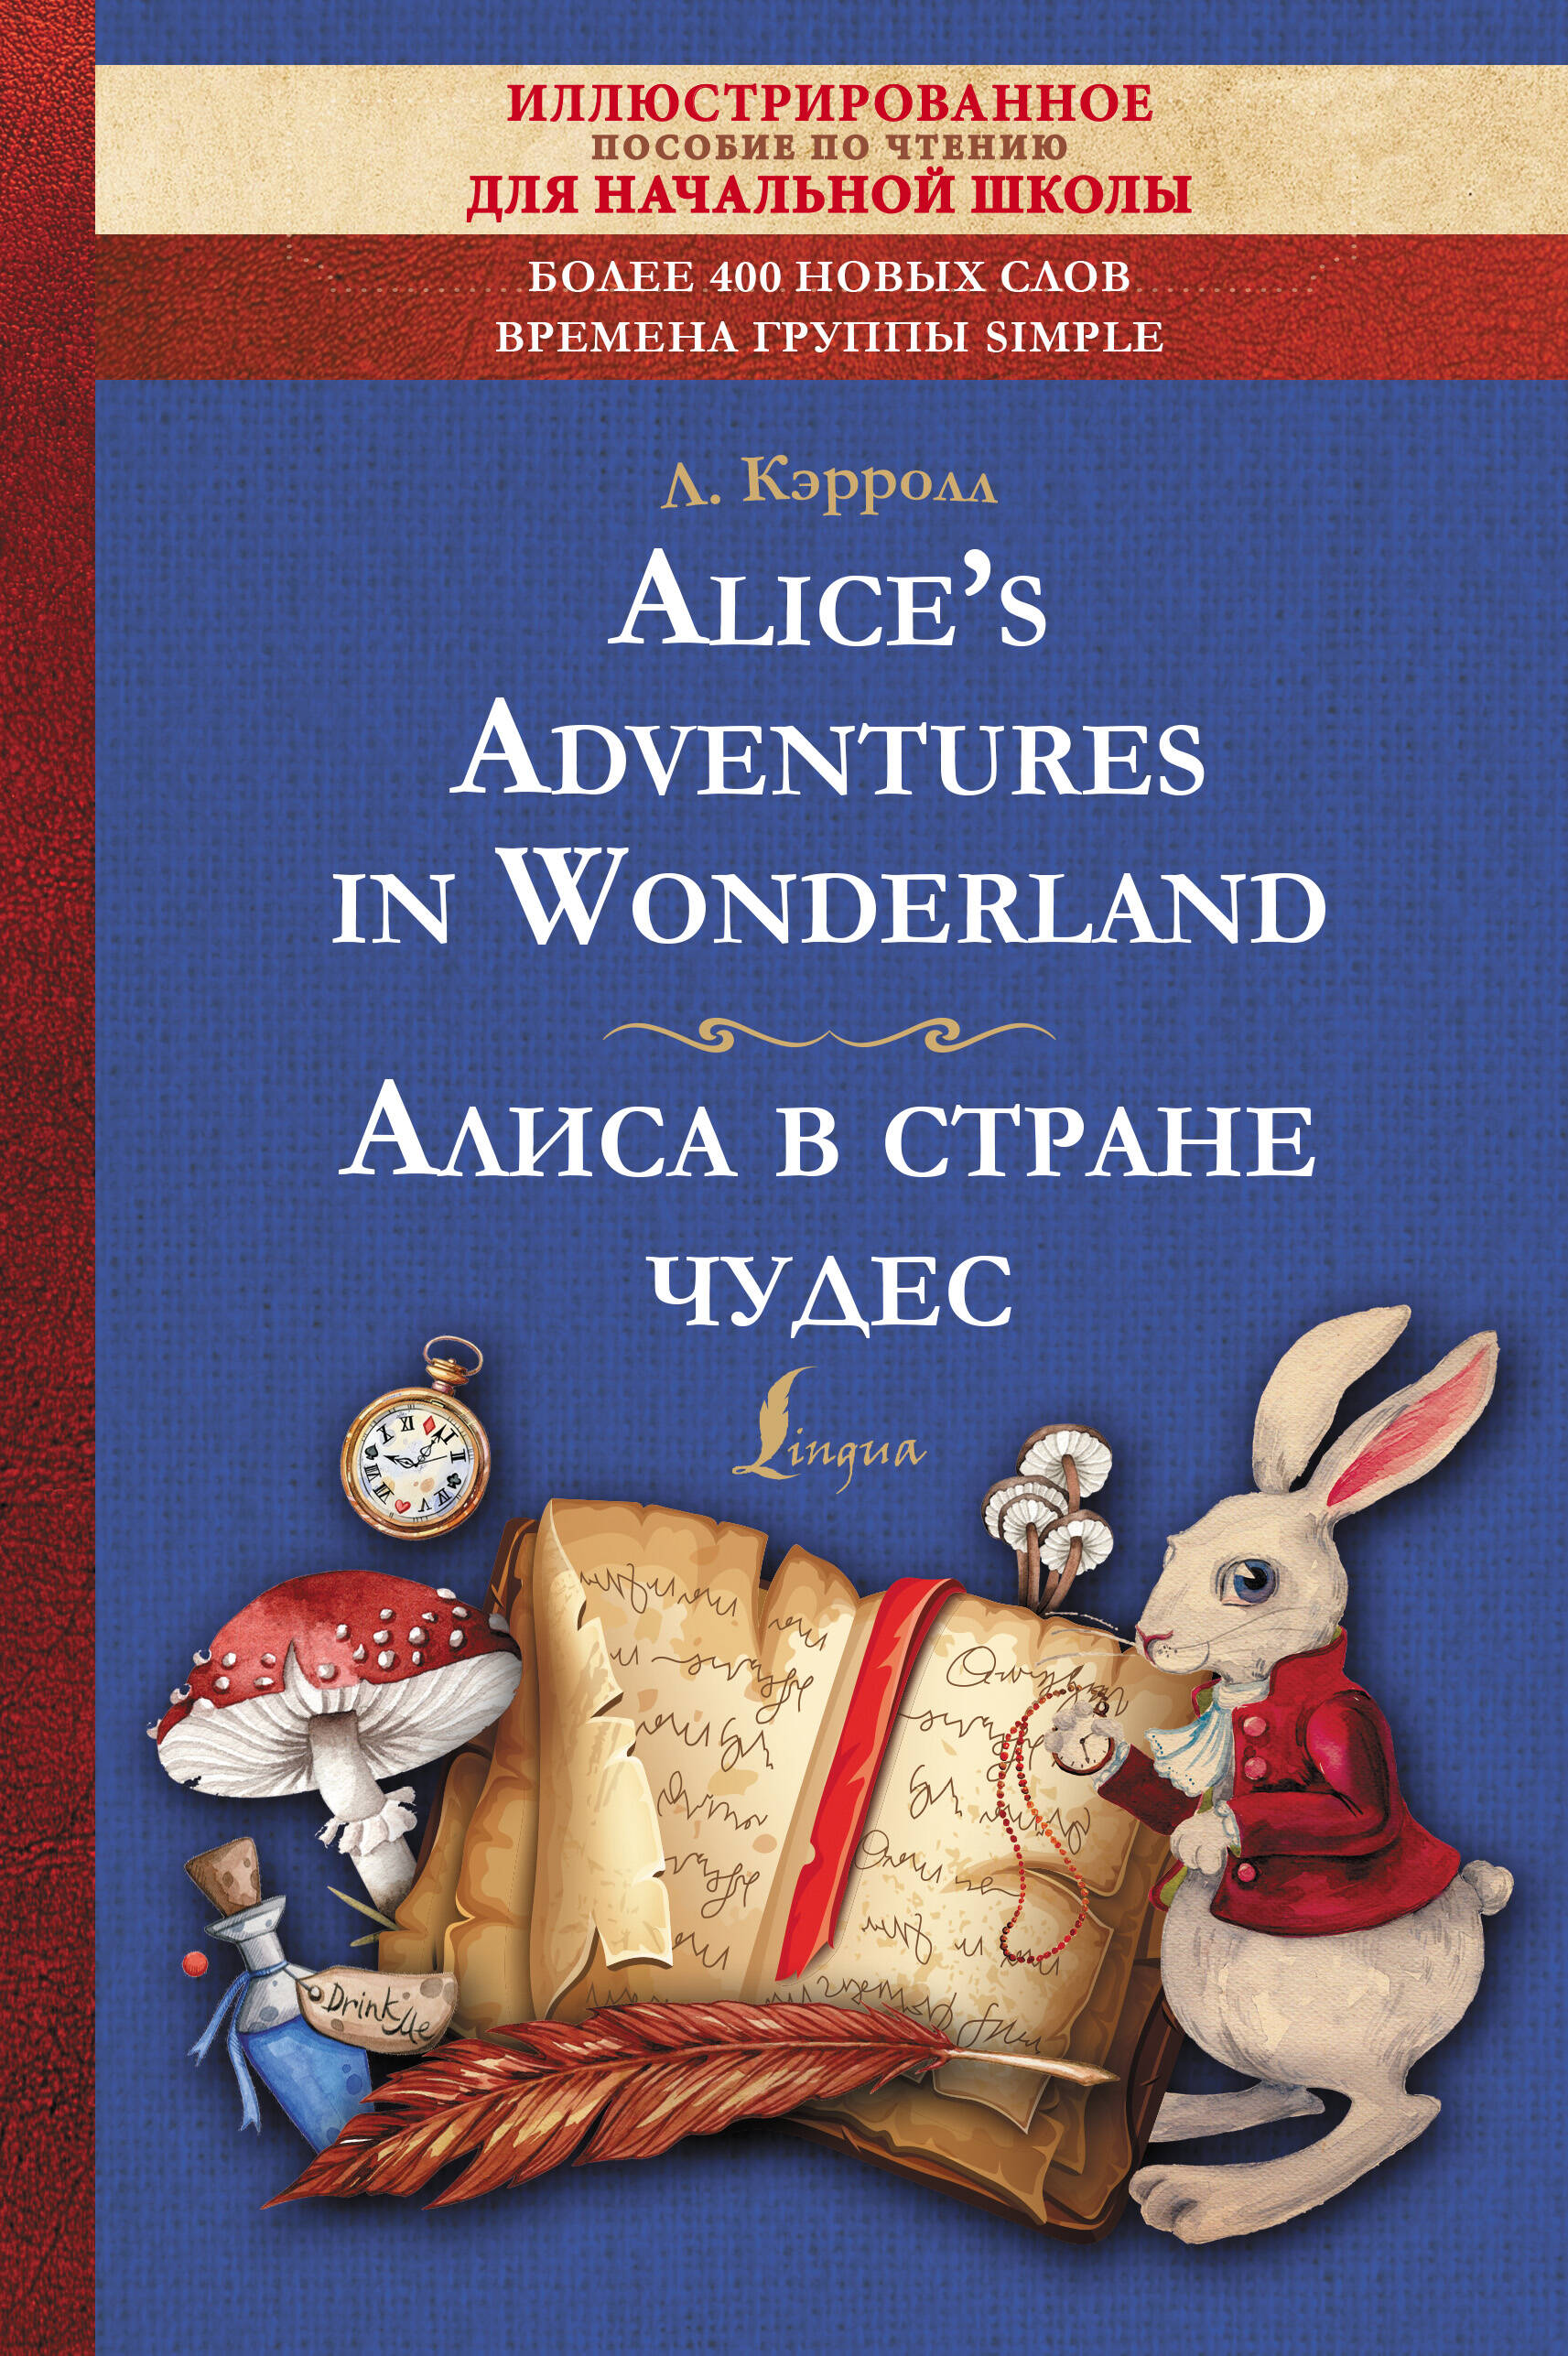 Кэрролл Льюис Alices Adventures in Wonderland = Алиса в стране чудес. Иллюстрированное пособие для чтения льюис кэрролл alices adventures in wonderland